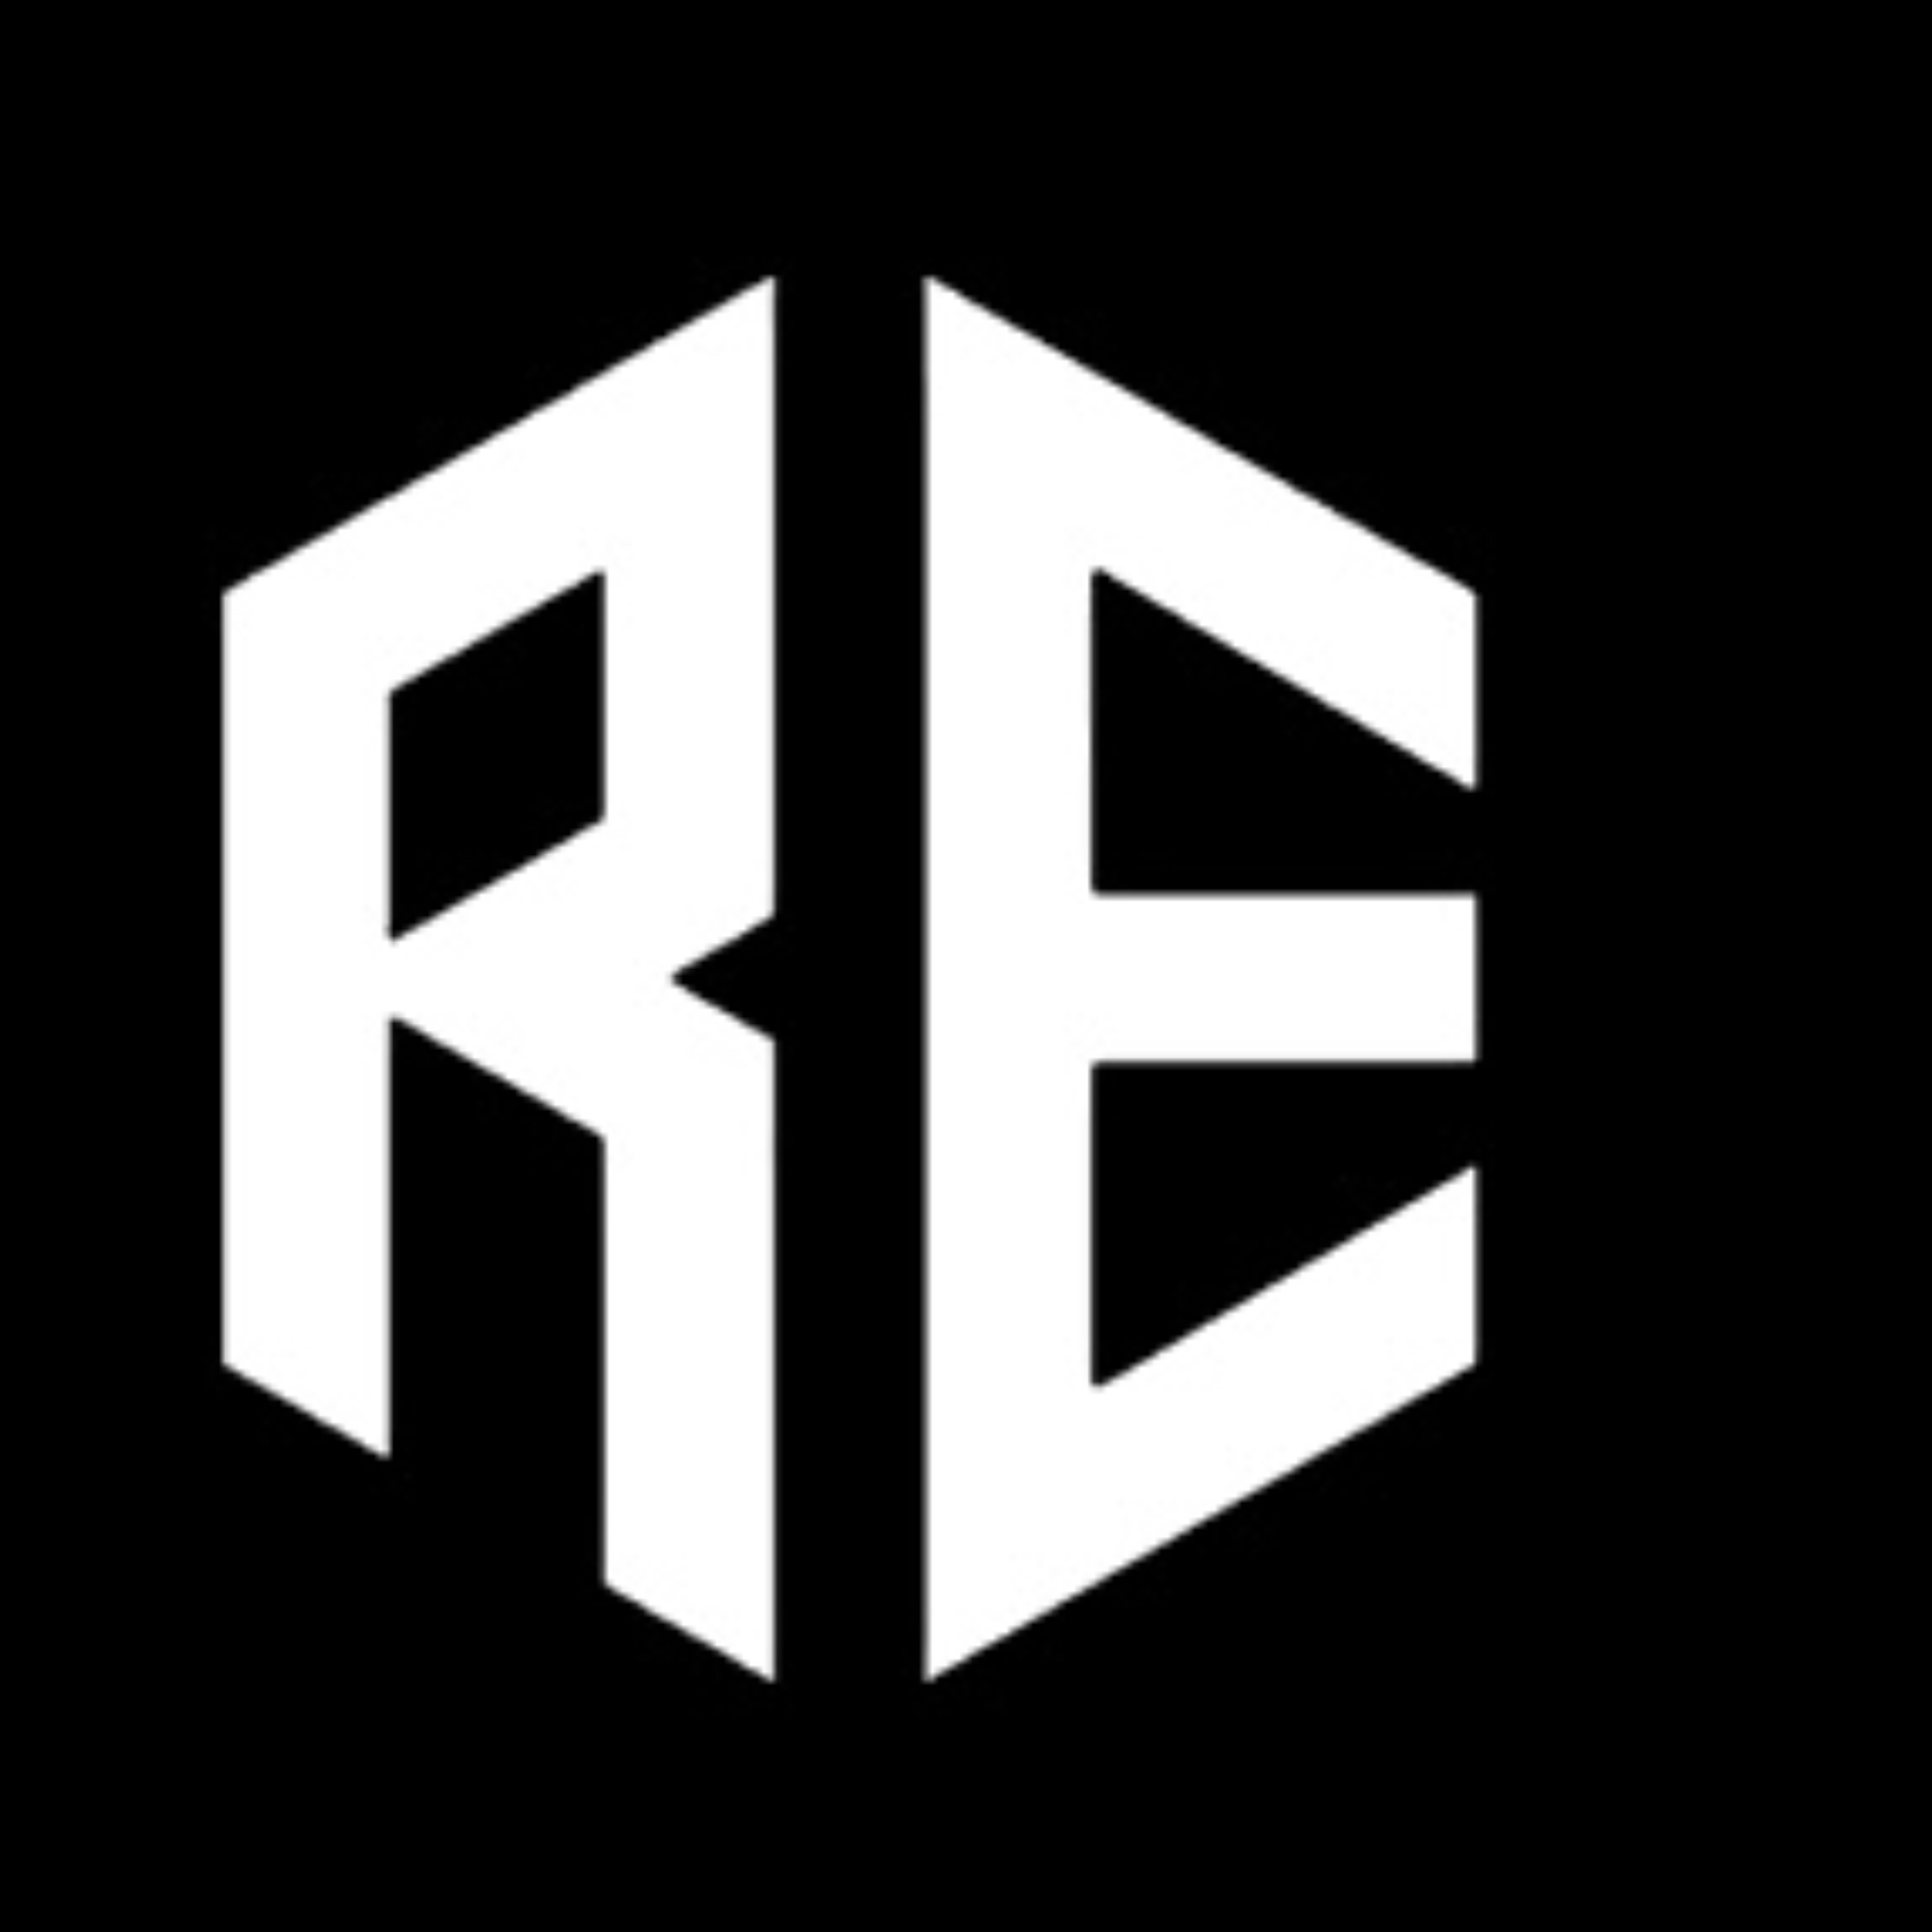 Organization logo for Ryder elite